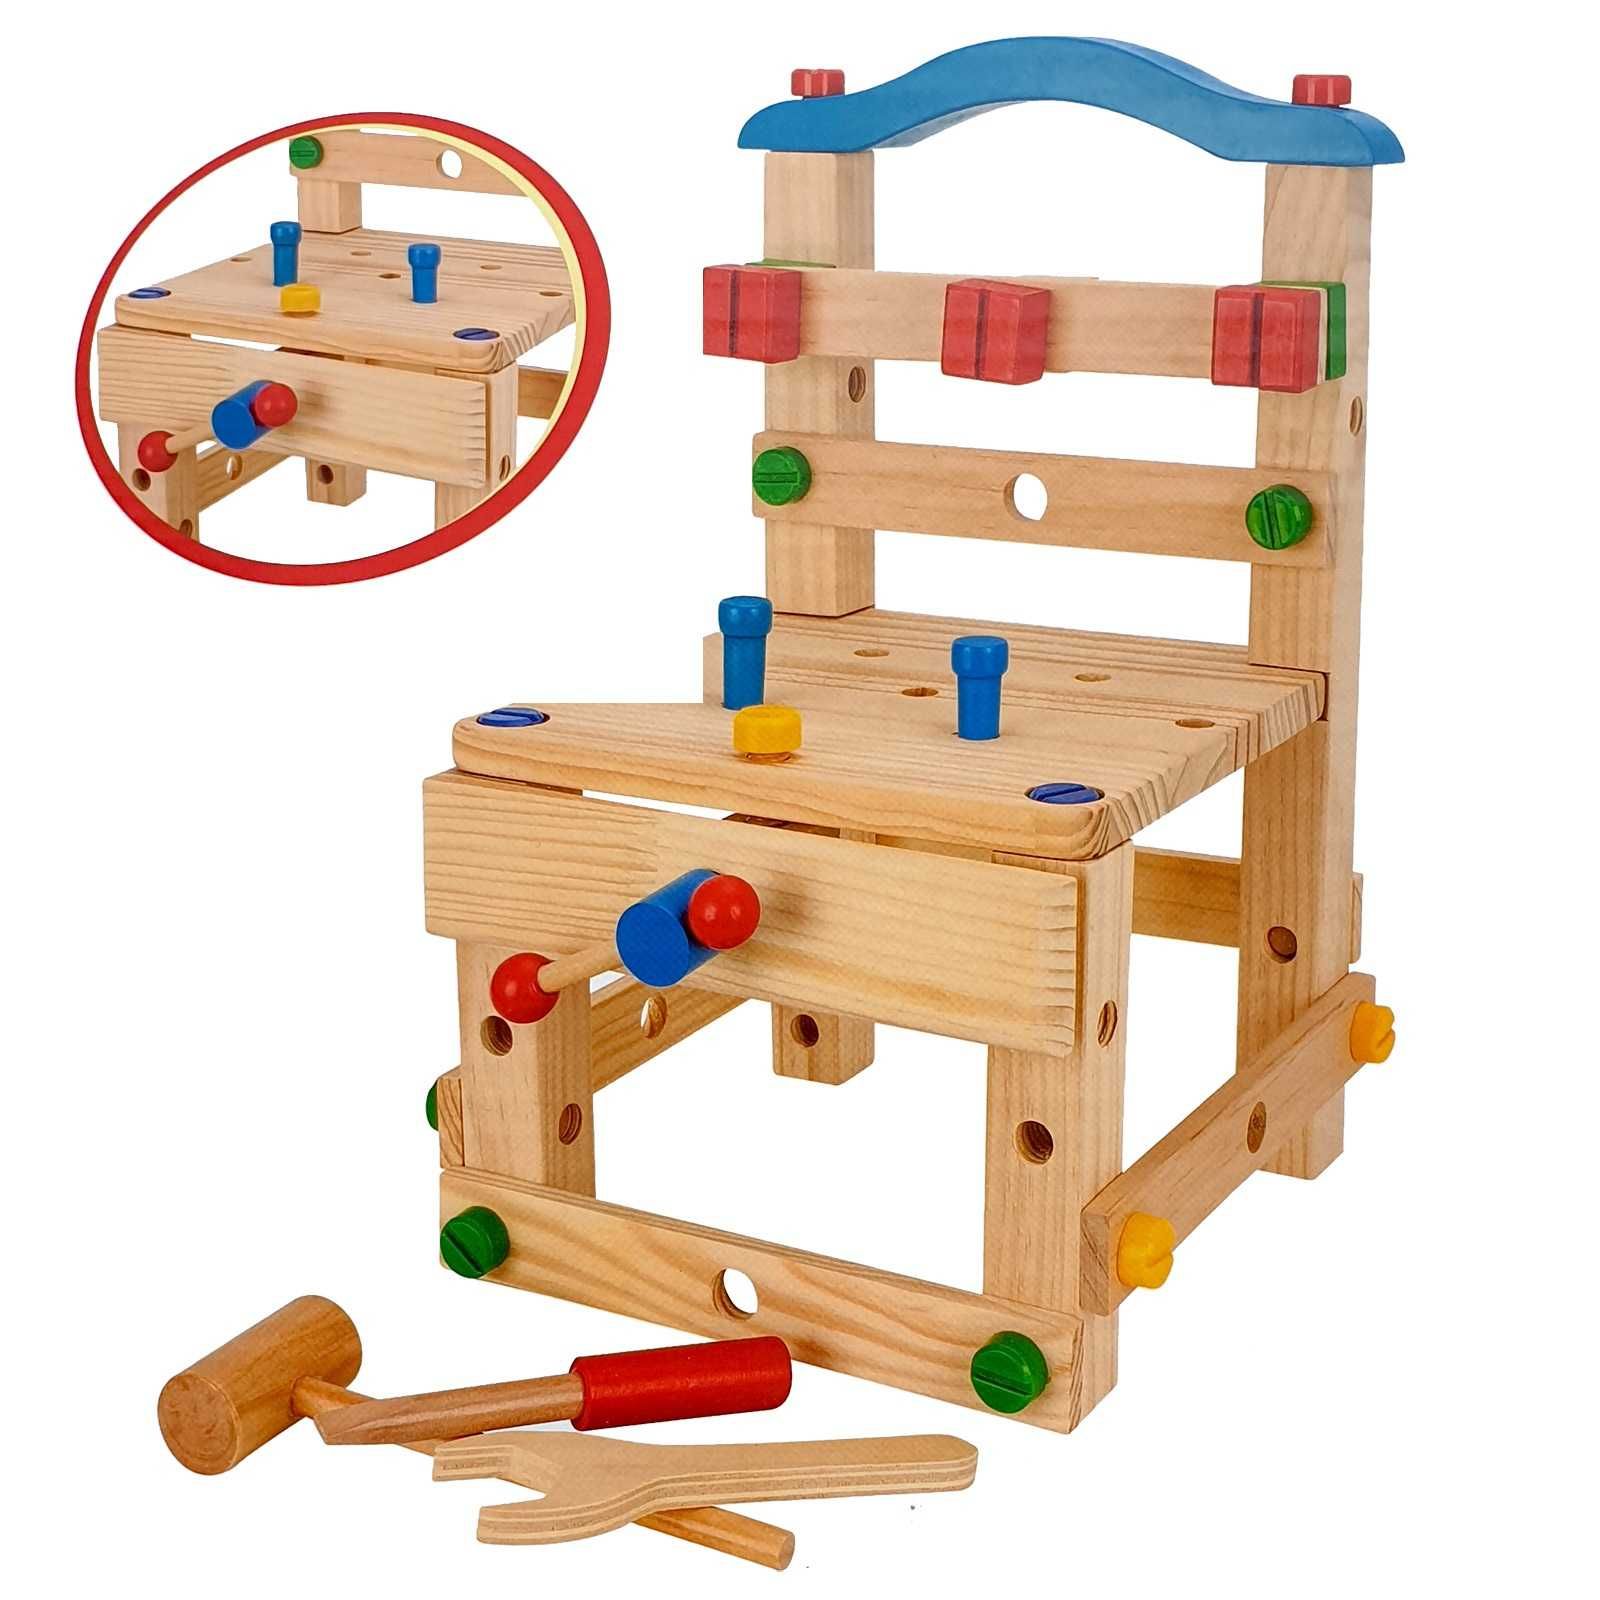 Centru de activitati Montessori din lemn Wisdom Chair, 44 piese,3 ani+